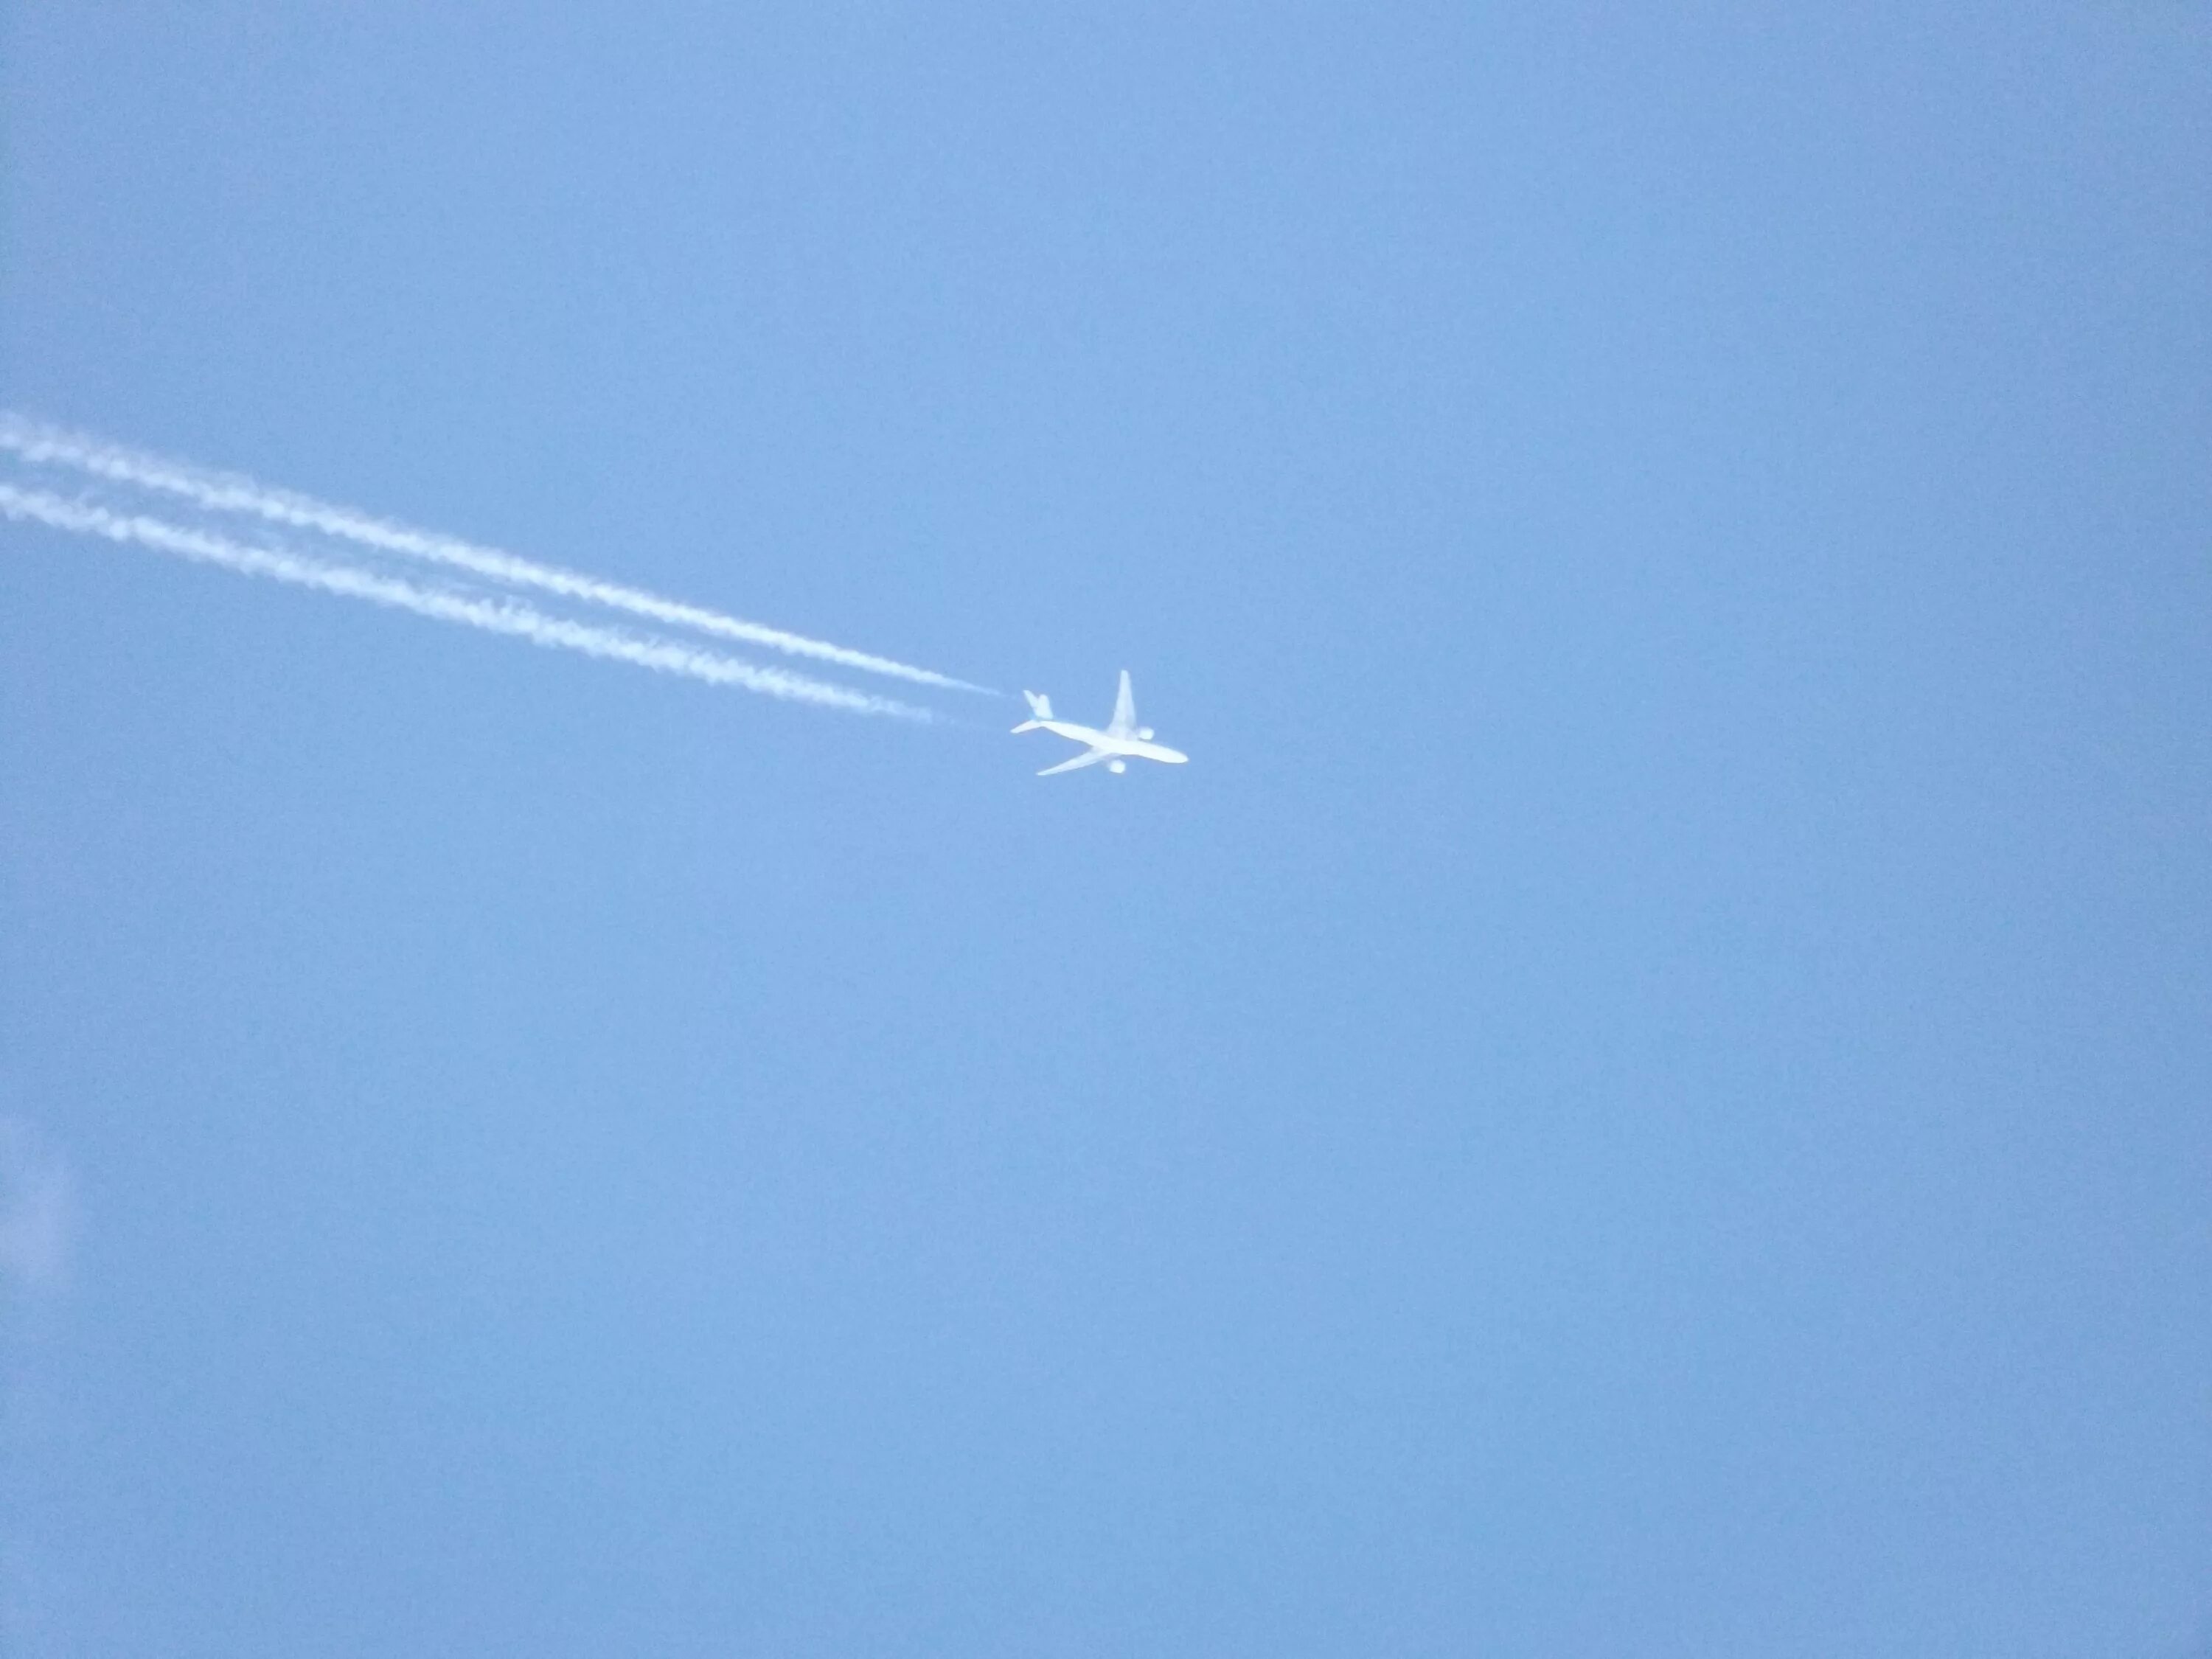 Неба совсем не видно. Самолет в небе. Cfvjktn DF yt,t. Самолет вдалеке. Самолет далеко в небе.